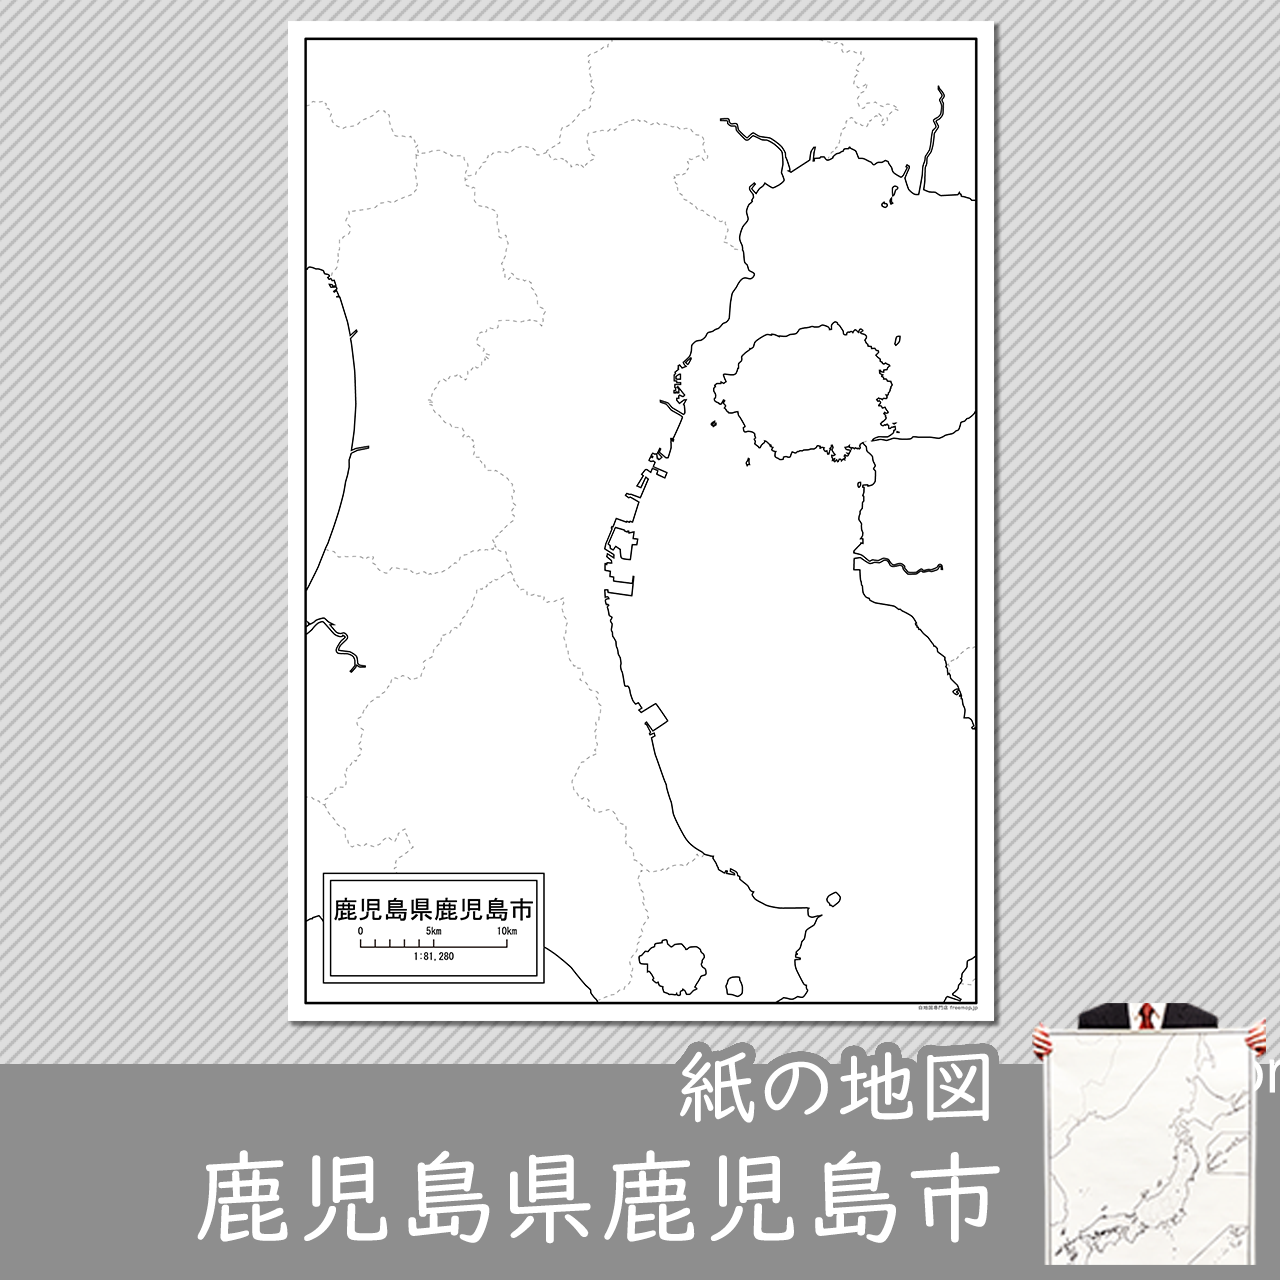 鹿児島市の紙の白地図のサムネイル